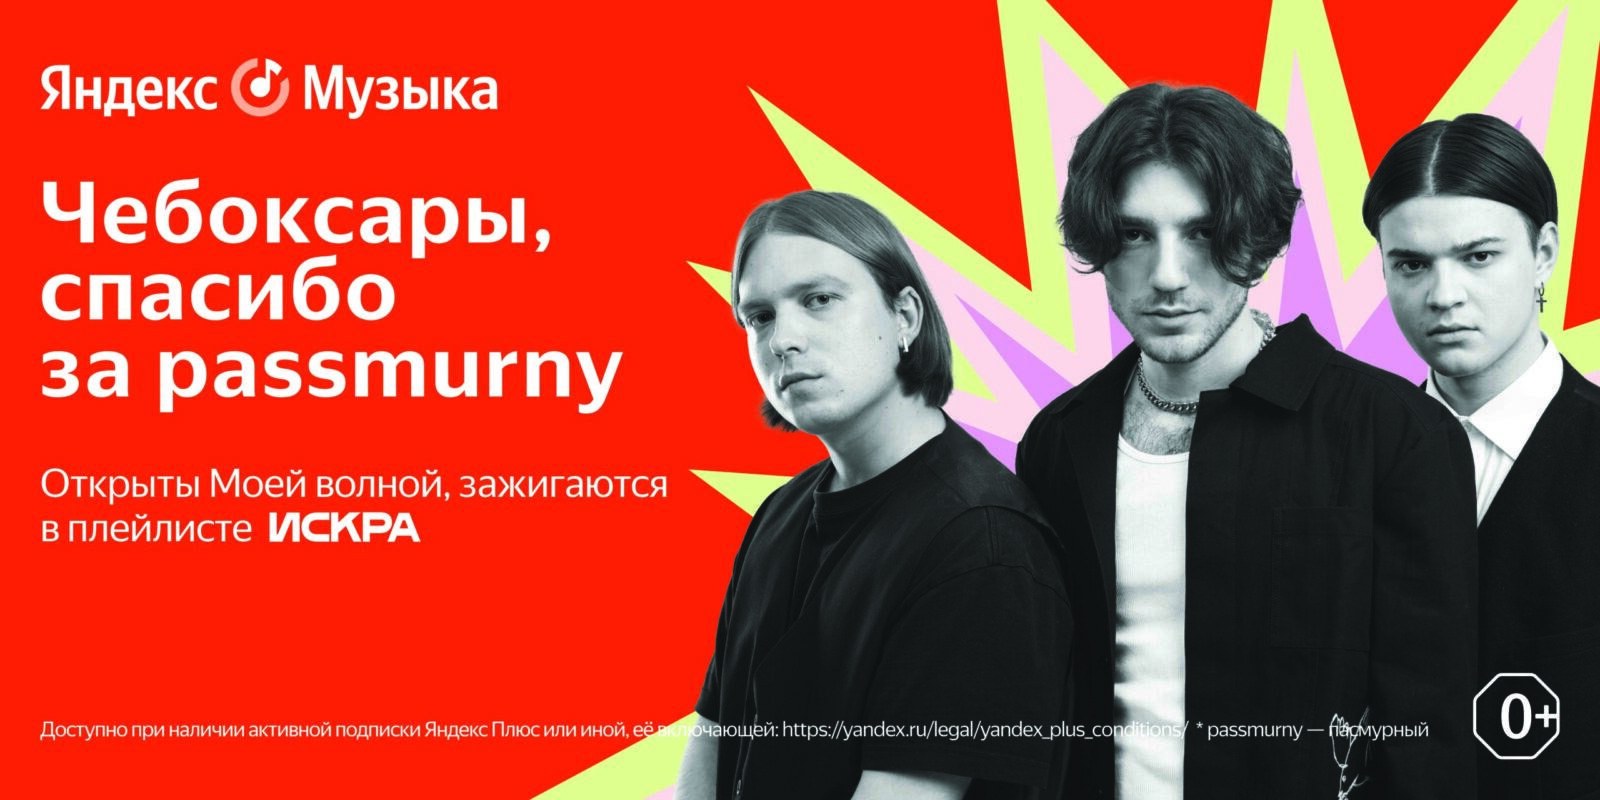 Яндекс Музыка запустила проект Искра для поддержки молодых музыкантов (6000x3000 scaled)